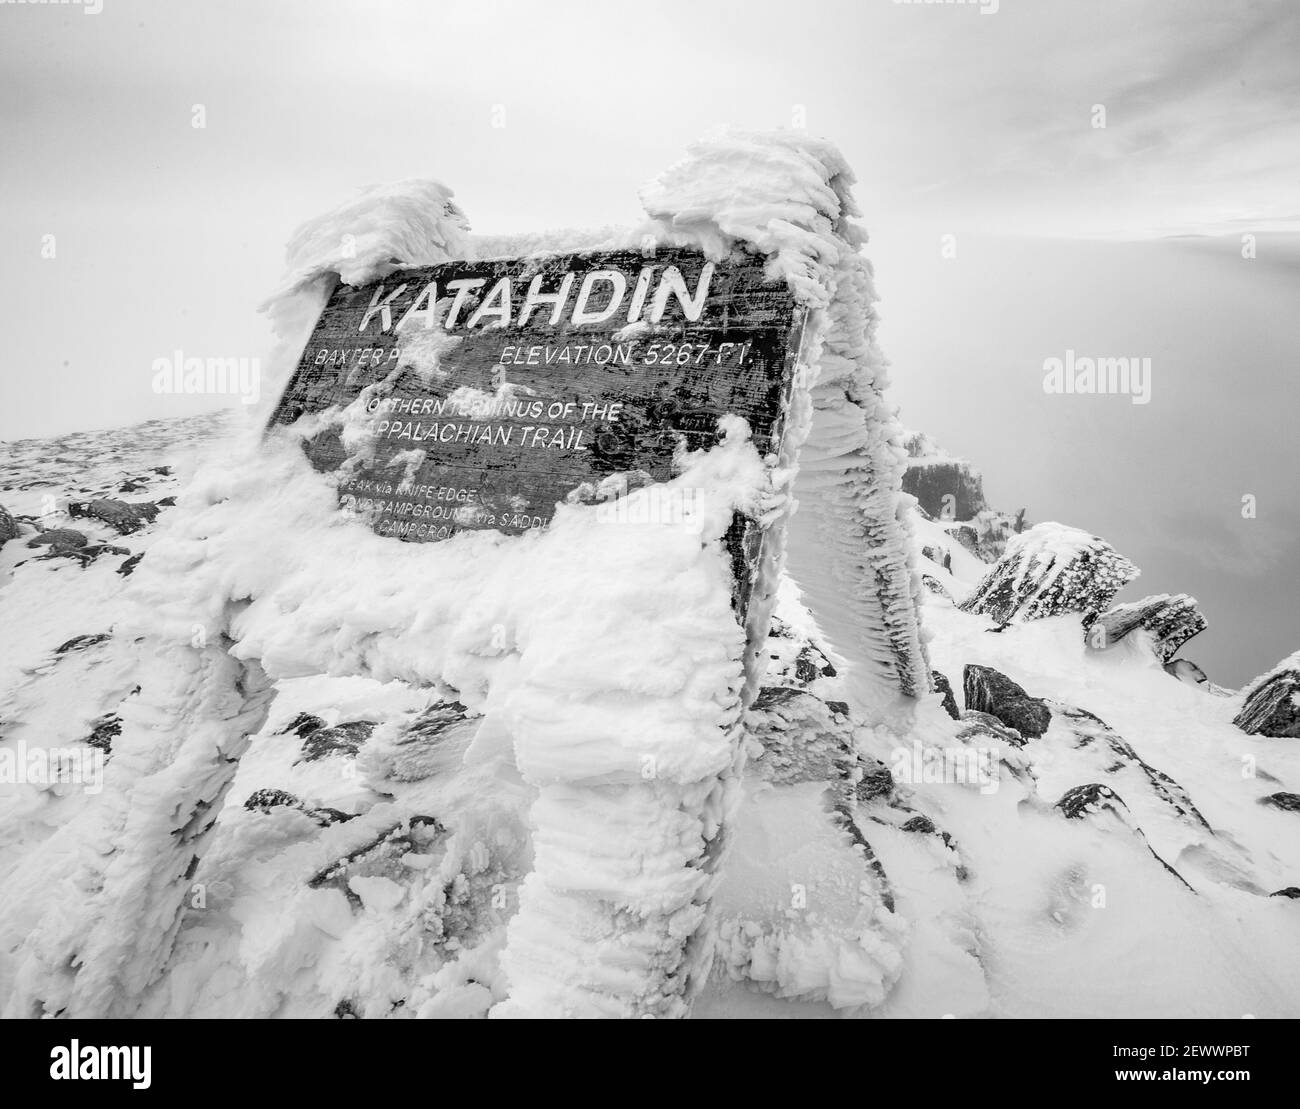 Panneau de sommet de katahdin recouvert de neige en hiver, Appalachian Trail. Banque D'Images